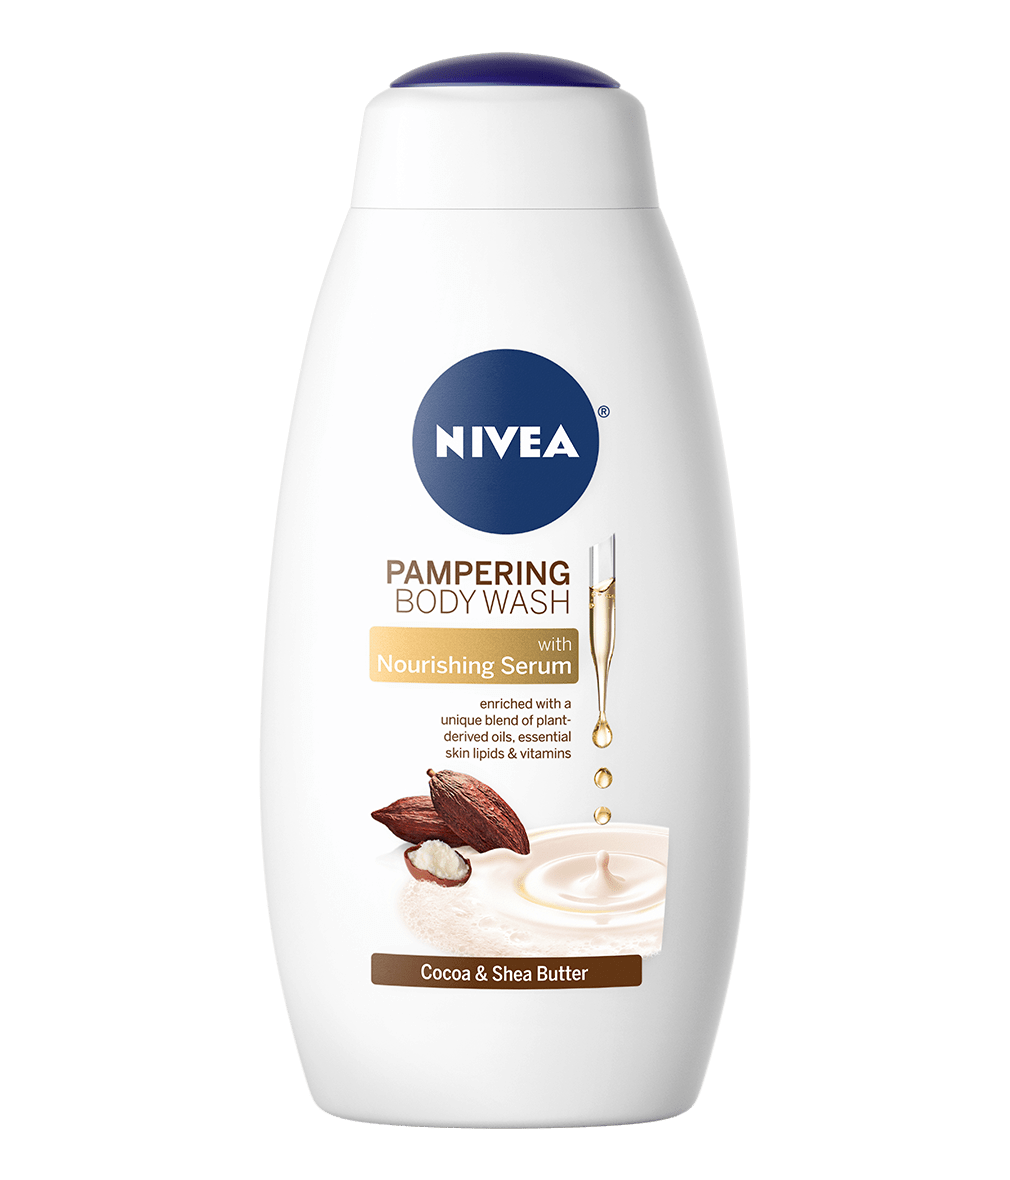 Cocoa & Shea Butter Body Wash with Nourishing Serum